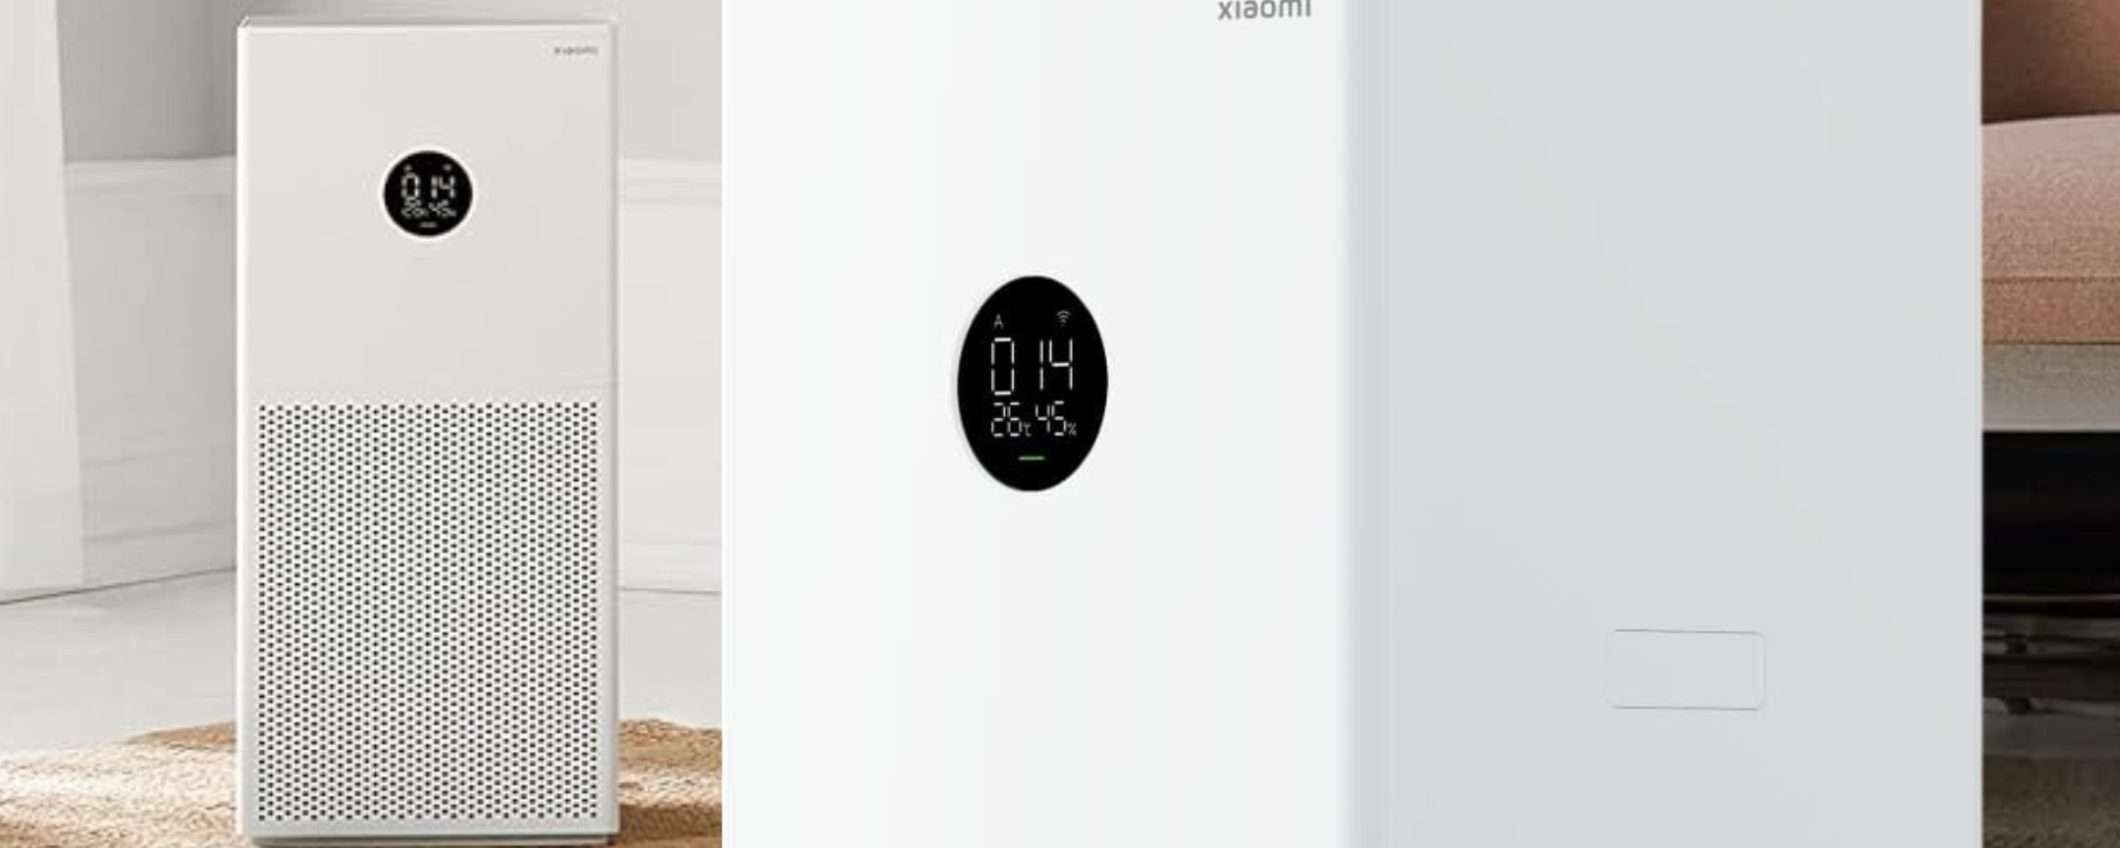 Xiaomi prezzo WOW per il purificatore d'aria smart POTENTISSIMO (Amazon)